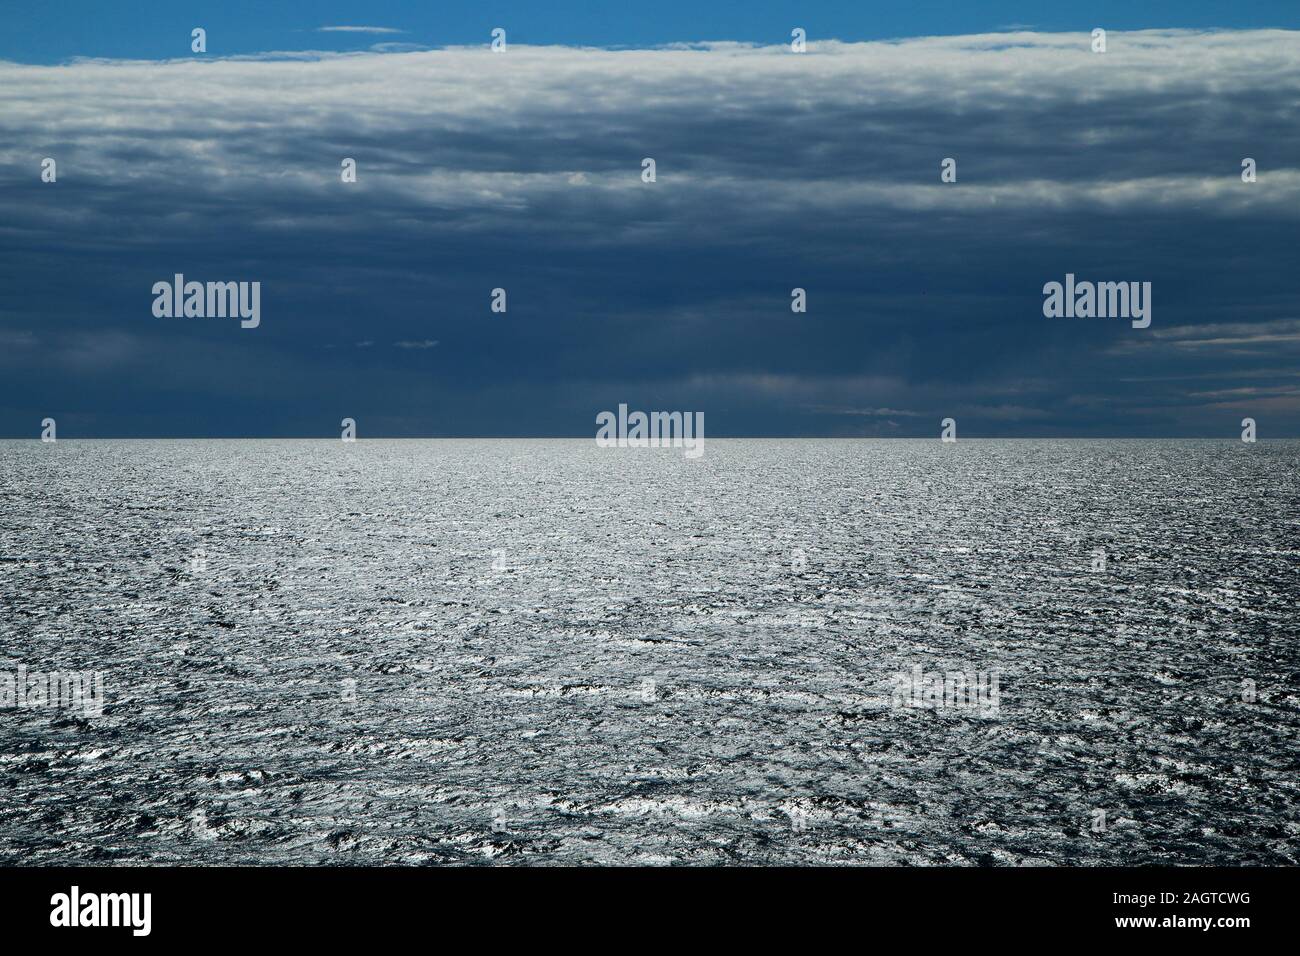 L'immagine da un traghetto tra la Svezia e la Finlandia. Il contrasto tra il cielo nuvoloso scuro e brillante acqua con sun riflessione. Foto Stock